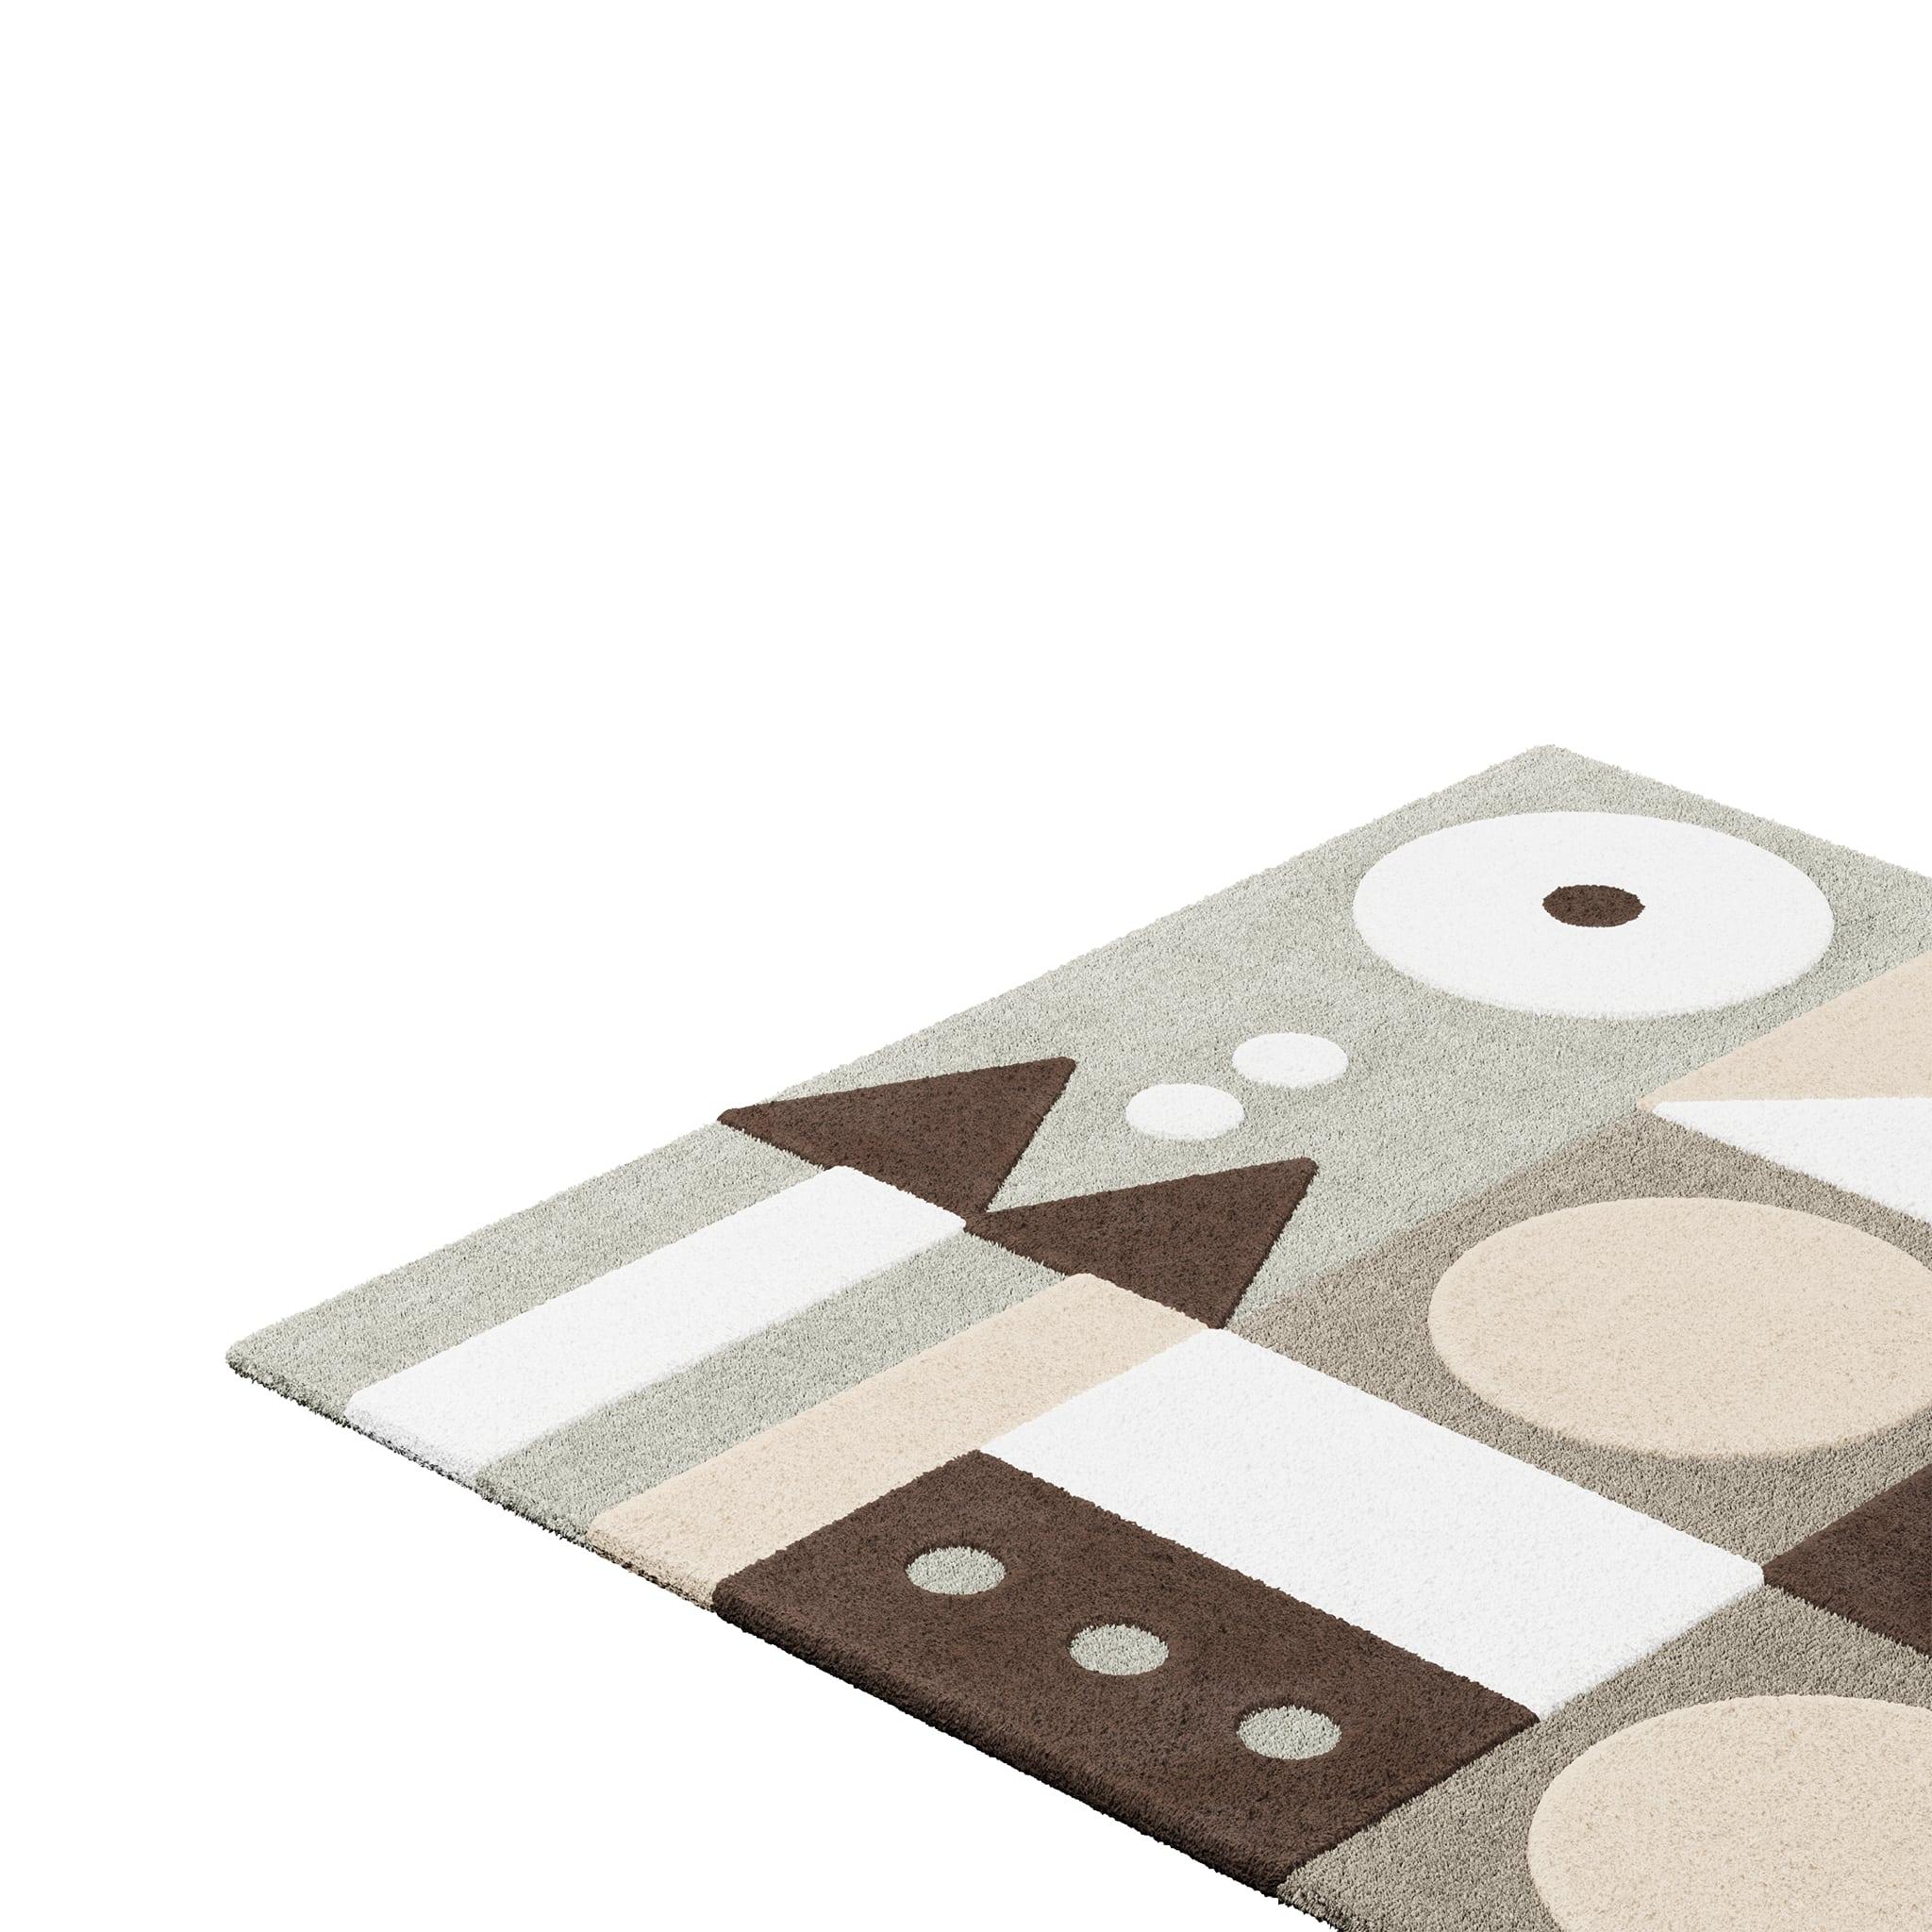 Tapis Pastel #13 est un tapis pastel qui mélange les vibrations modernes du milieu du siècle avec le style Design/One. La combinaison de teintes sourdes ajoute de la luminosité et du confort à n'importe quelle pièce. 
Ce tapis d'extérieur pastel a